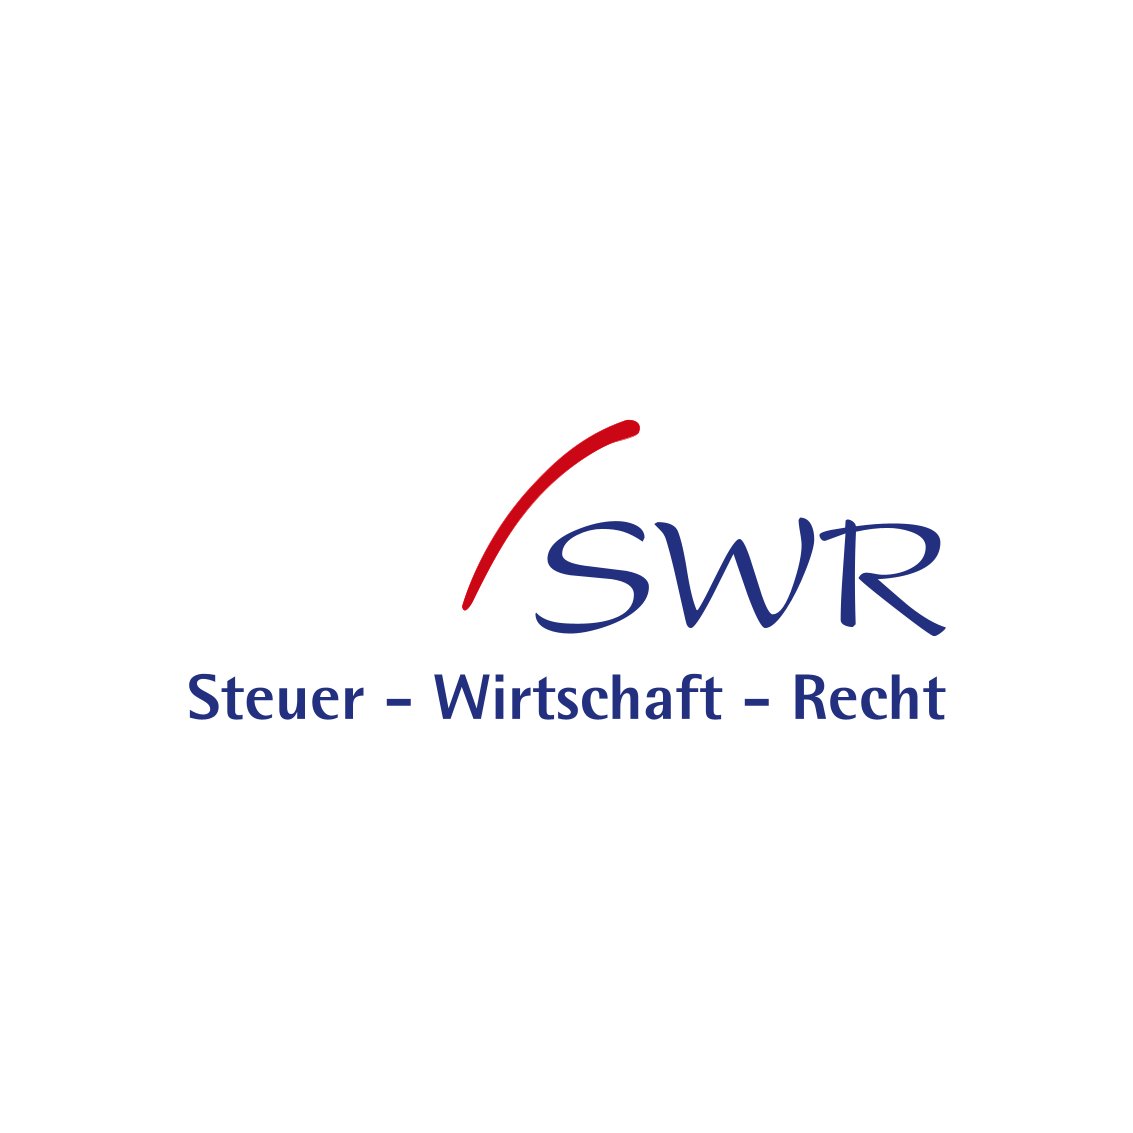 swr logo 1